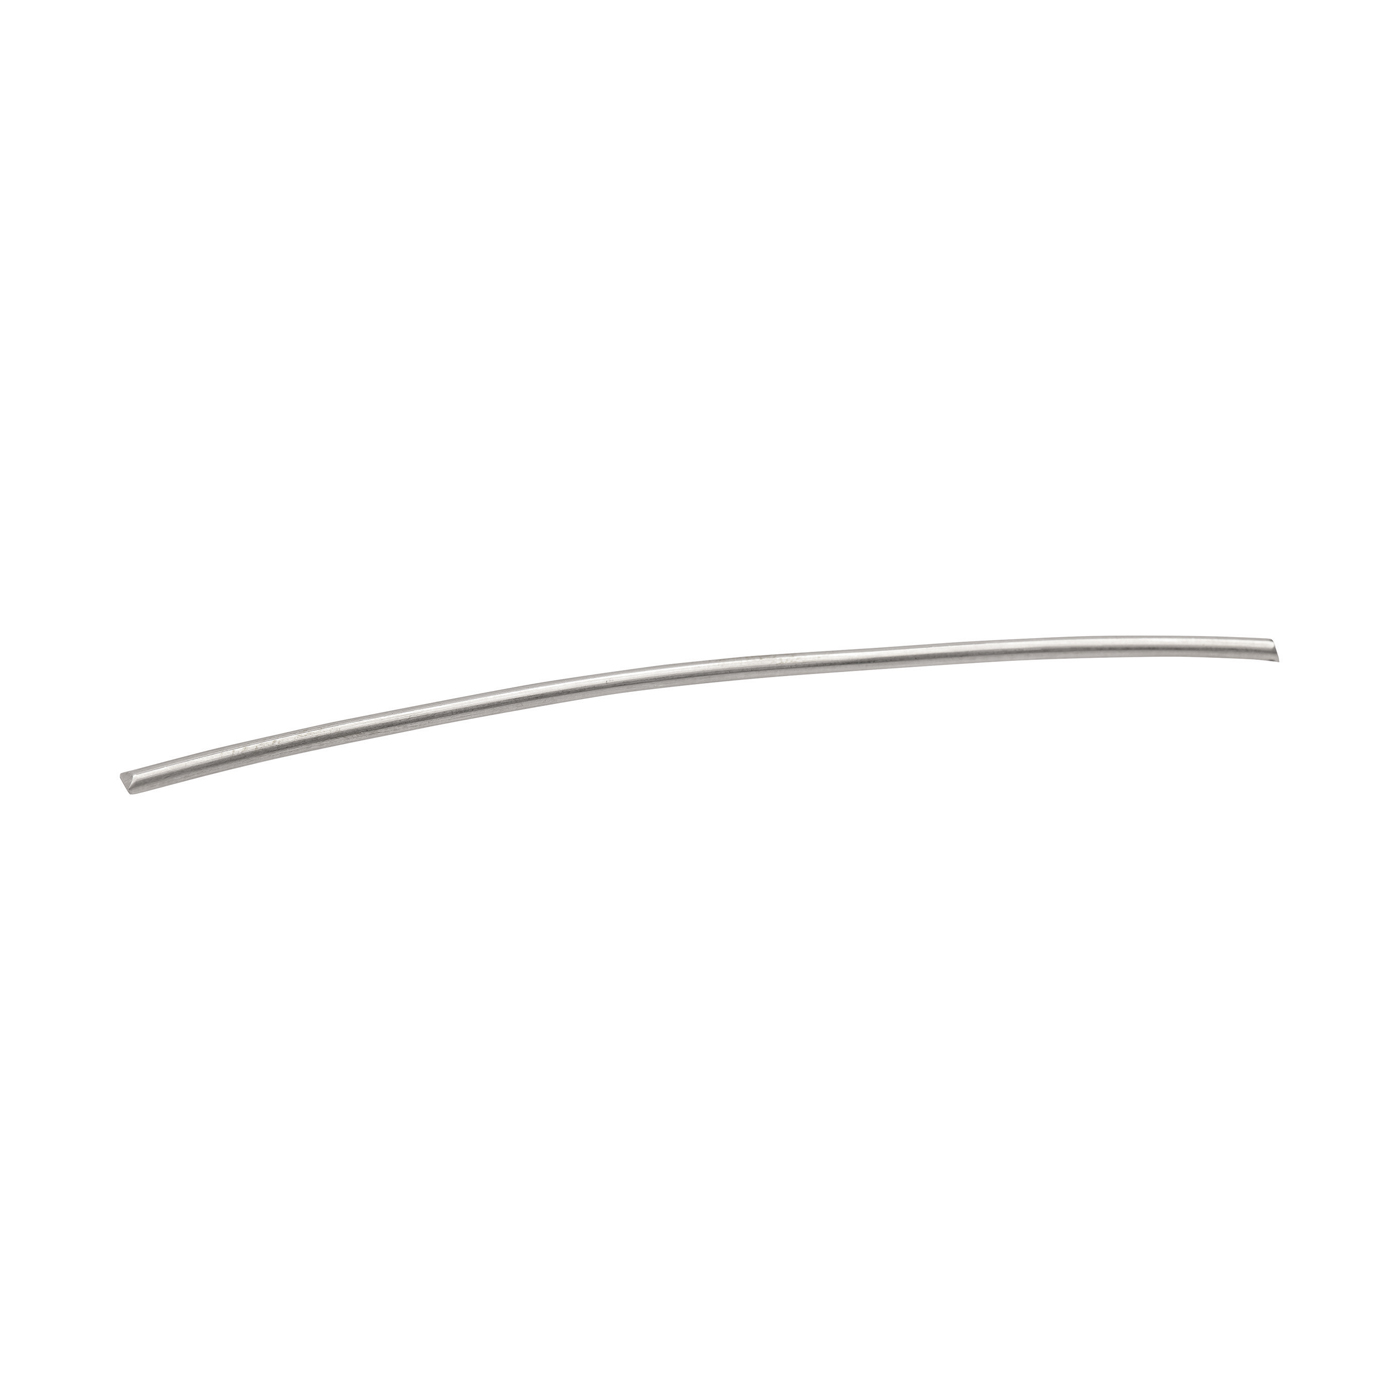 Round Wire, 760WG, ø 2 mm, Length 10 cm - 1 piece